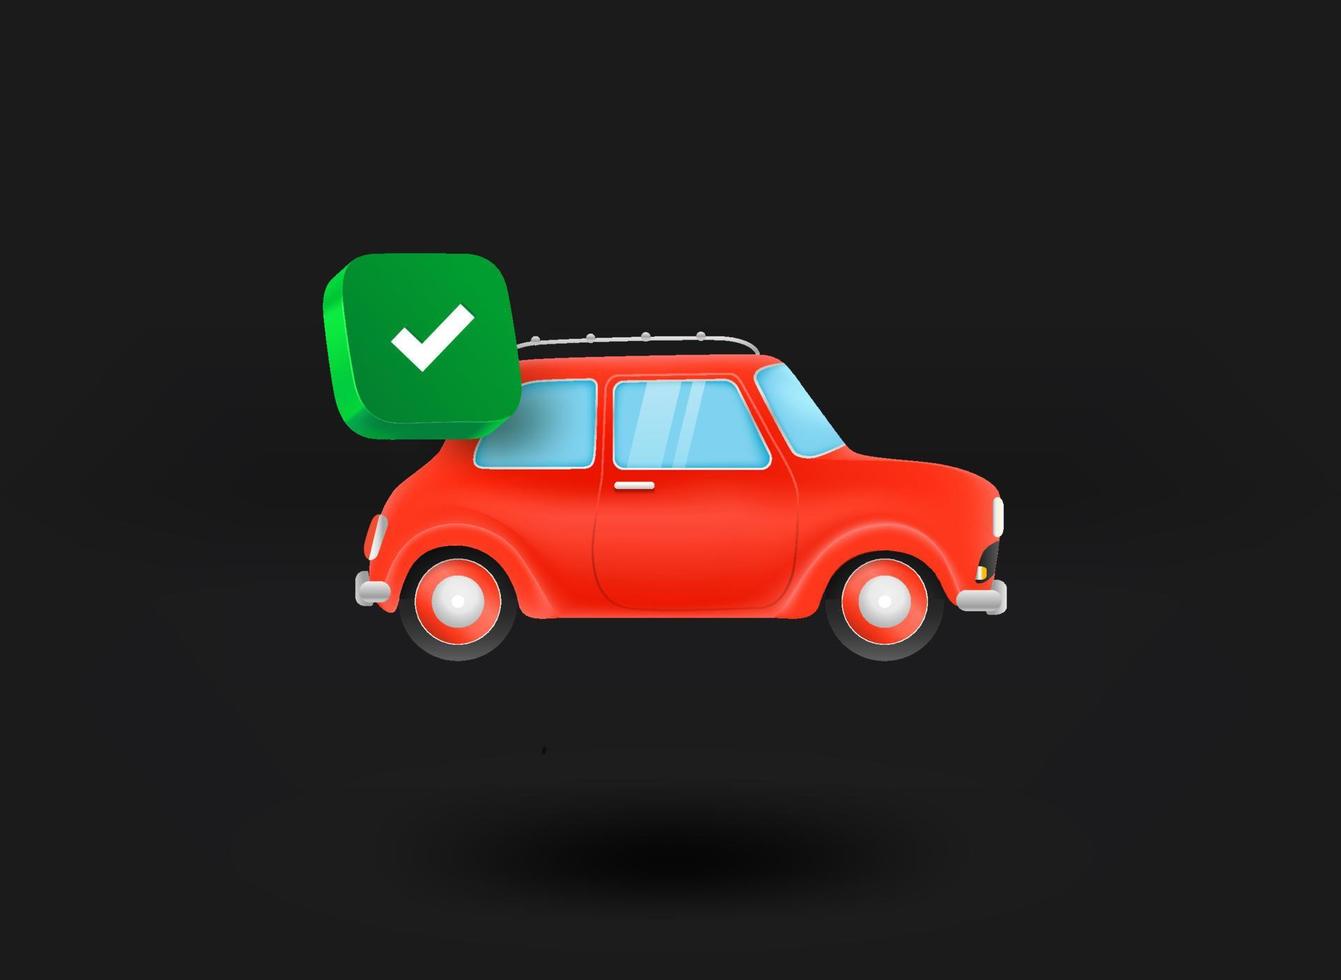 macchina rossa con l'icona del segno di spunta. illustrazione vettoriale 3d